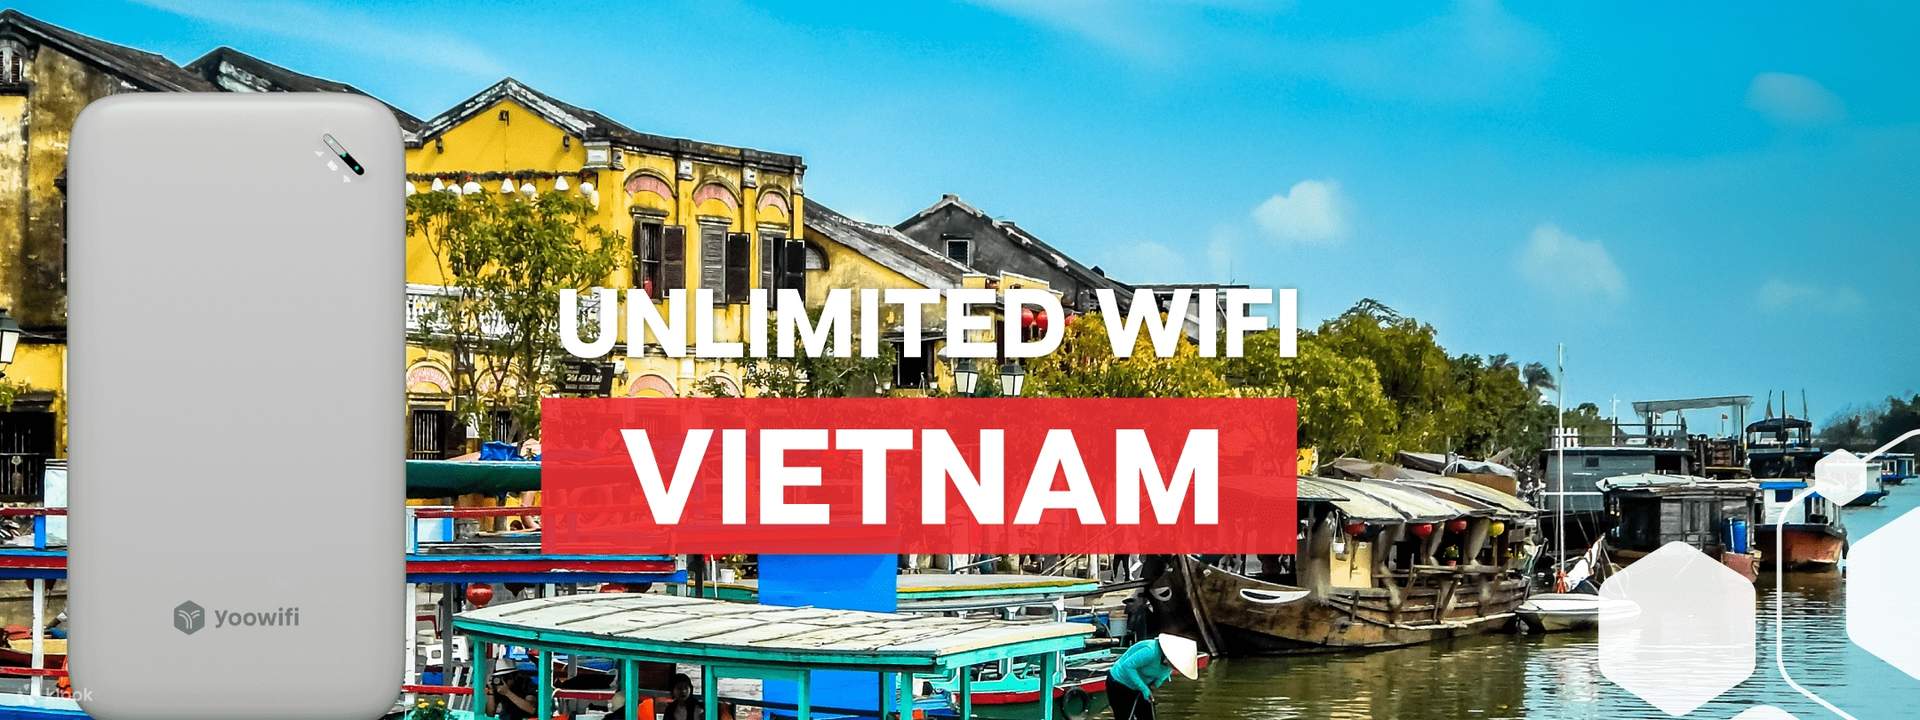 minibus simulator vietnam free download apkpure